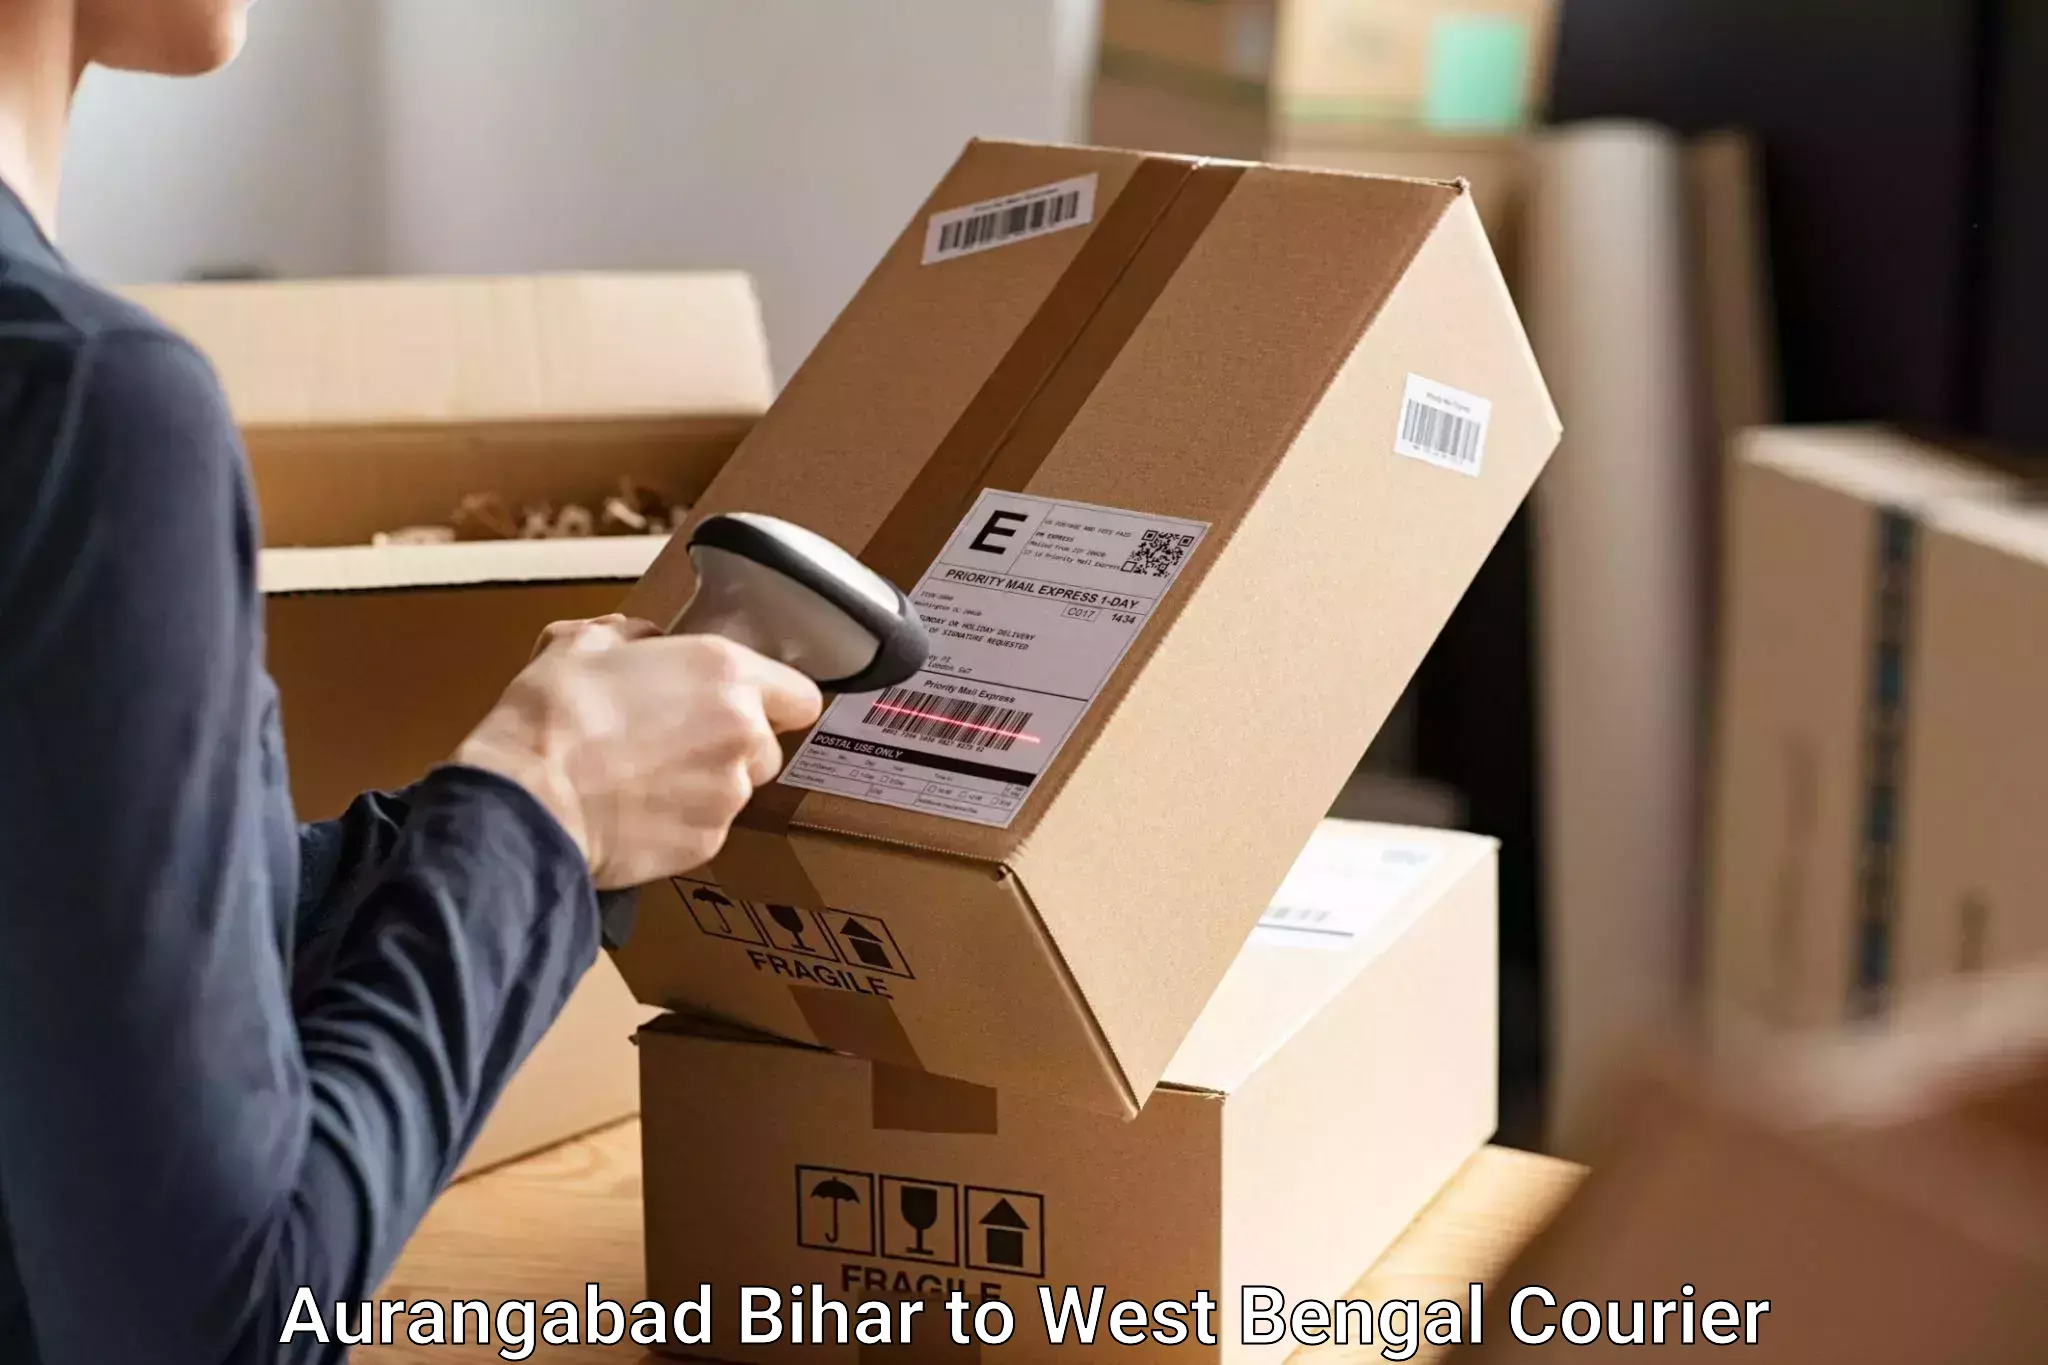 Luggage delivery estimate Aurangabad Bihar to Birbhum